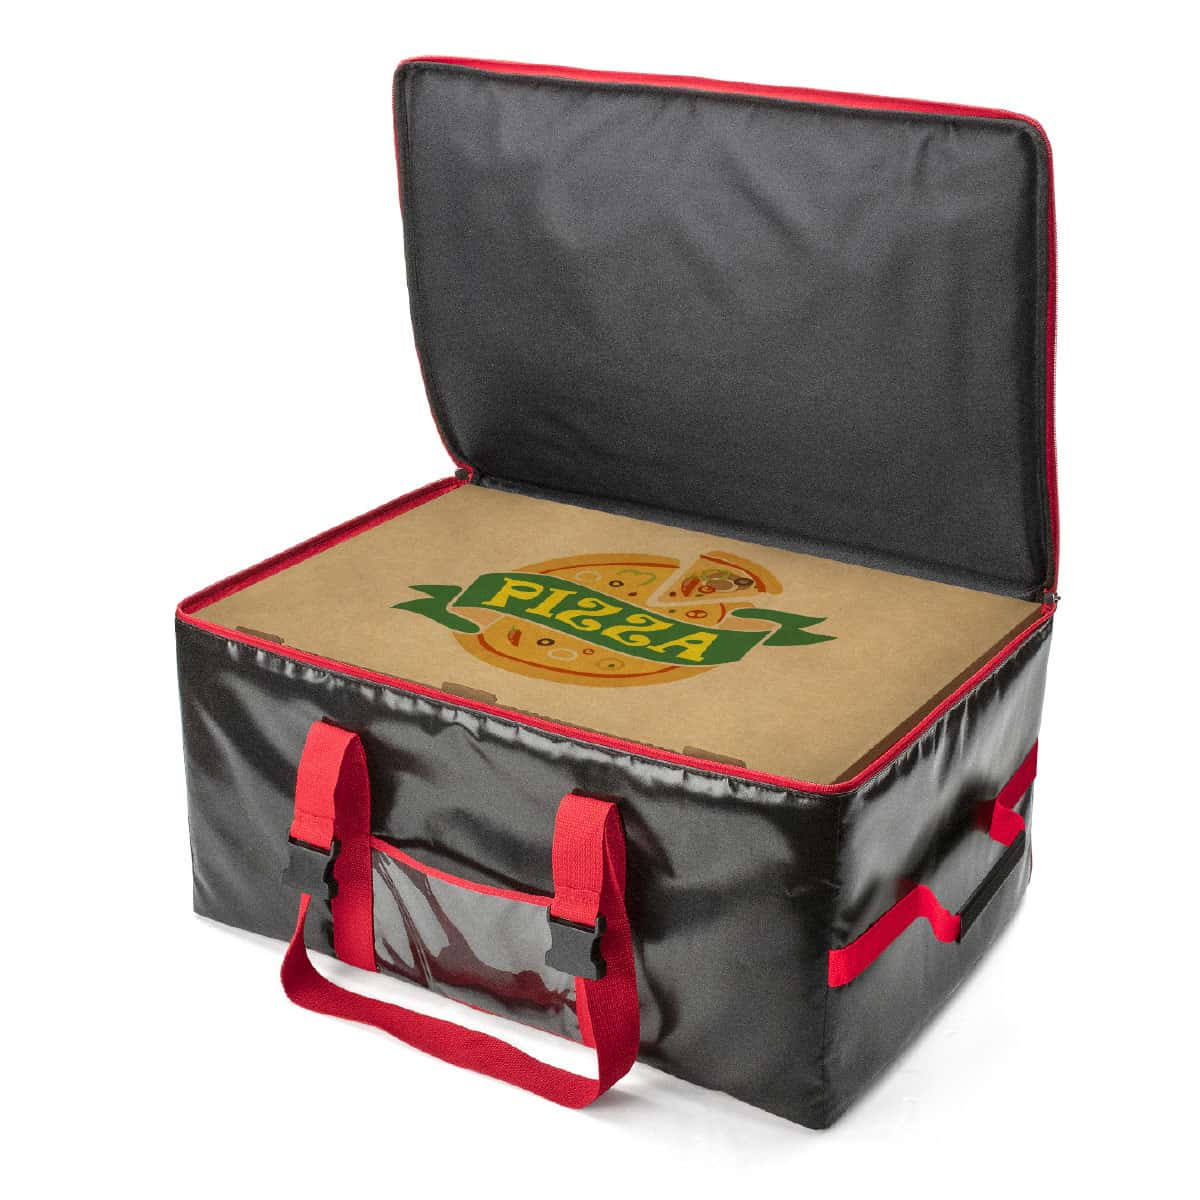 Il peut contenir jusqu'à 5 boîtes à pizza de 60x40 cm